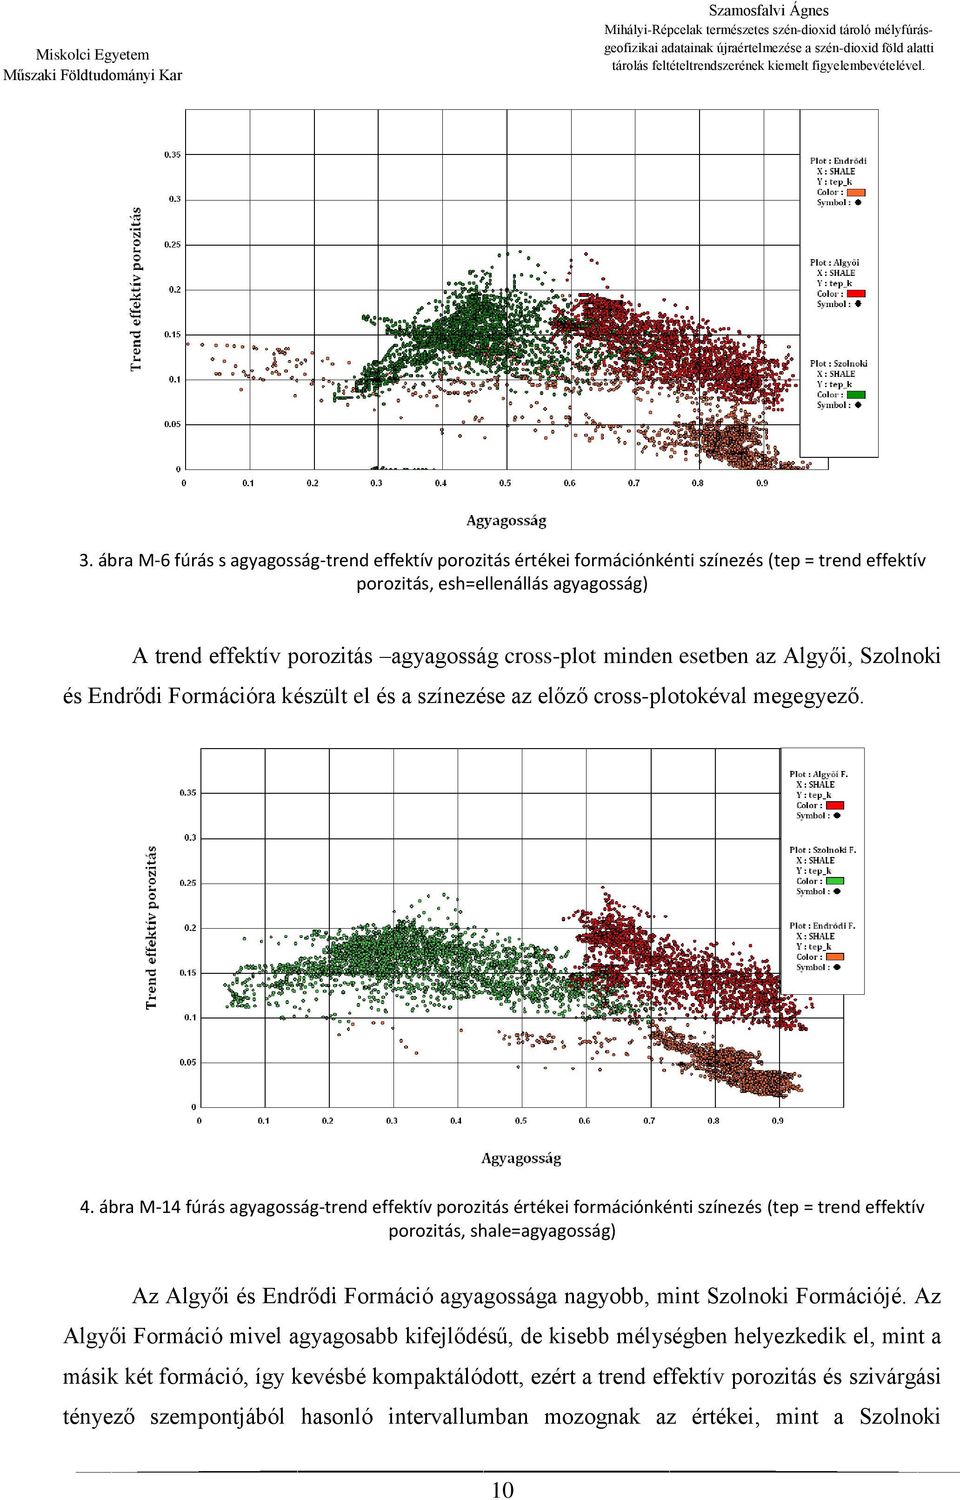 ábra M-14 fúrás agyagosság-trend effektív porozitás értékei formációnkénti színezés (tep = trend effektív porozitás, shale=agyagosság) Az Algyői és Endrődi Formáció agyagossága nagyobb, mint Szolnoki